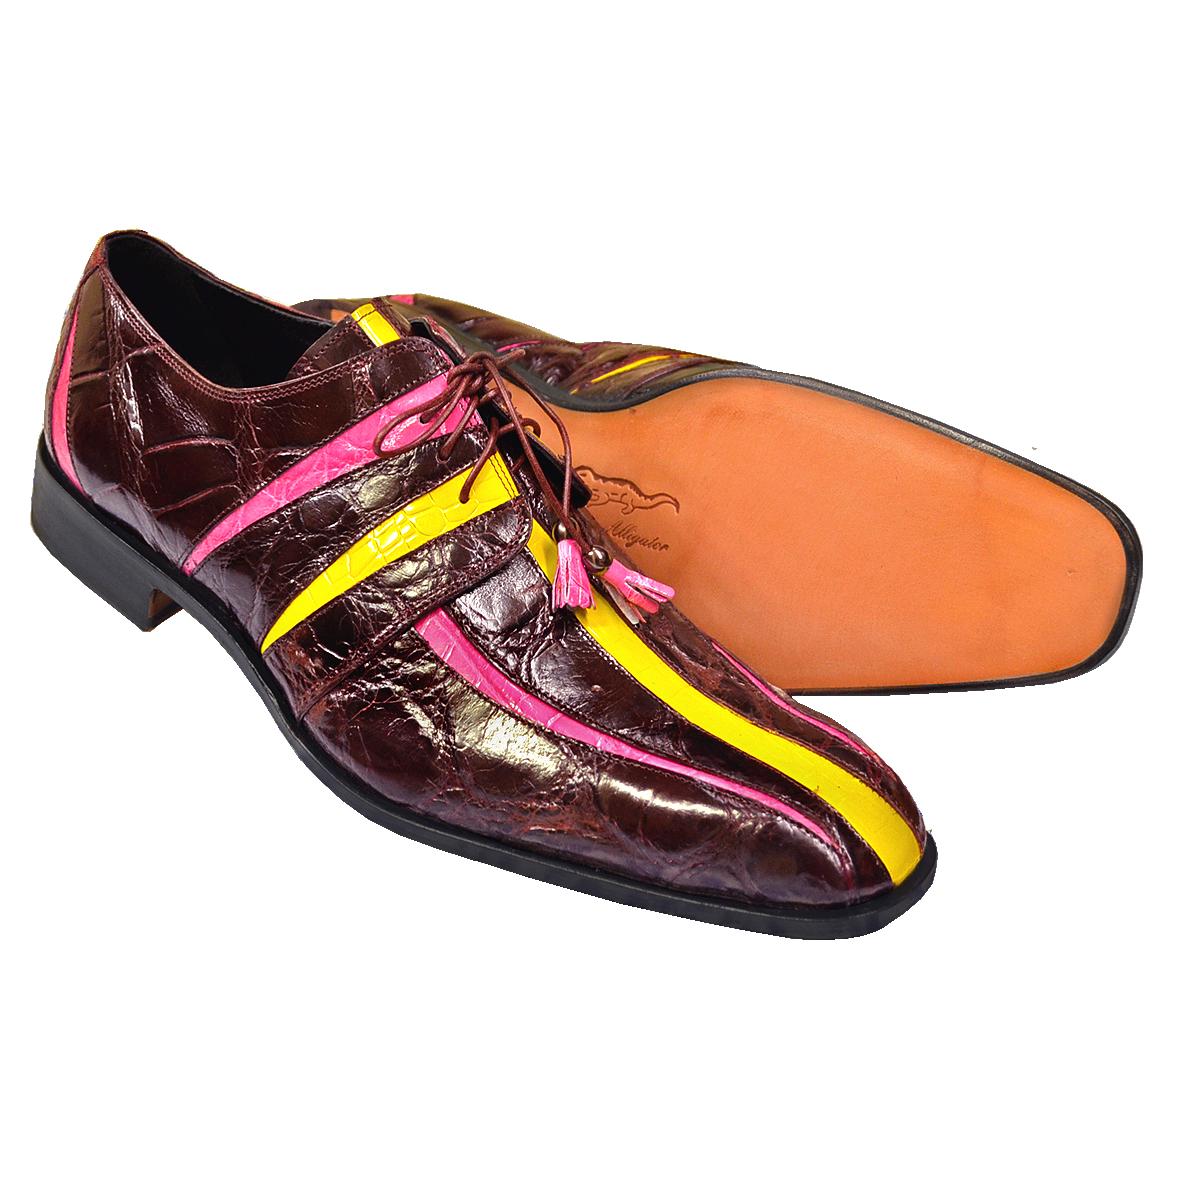 mauri crocodile shoes